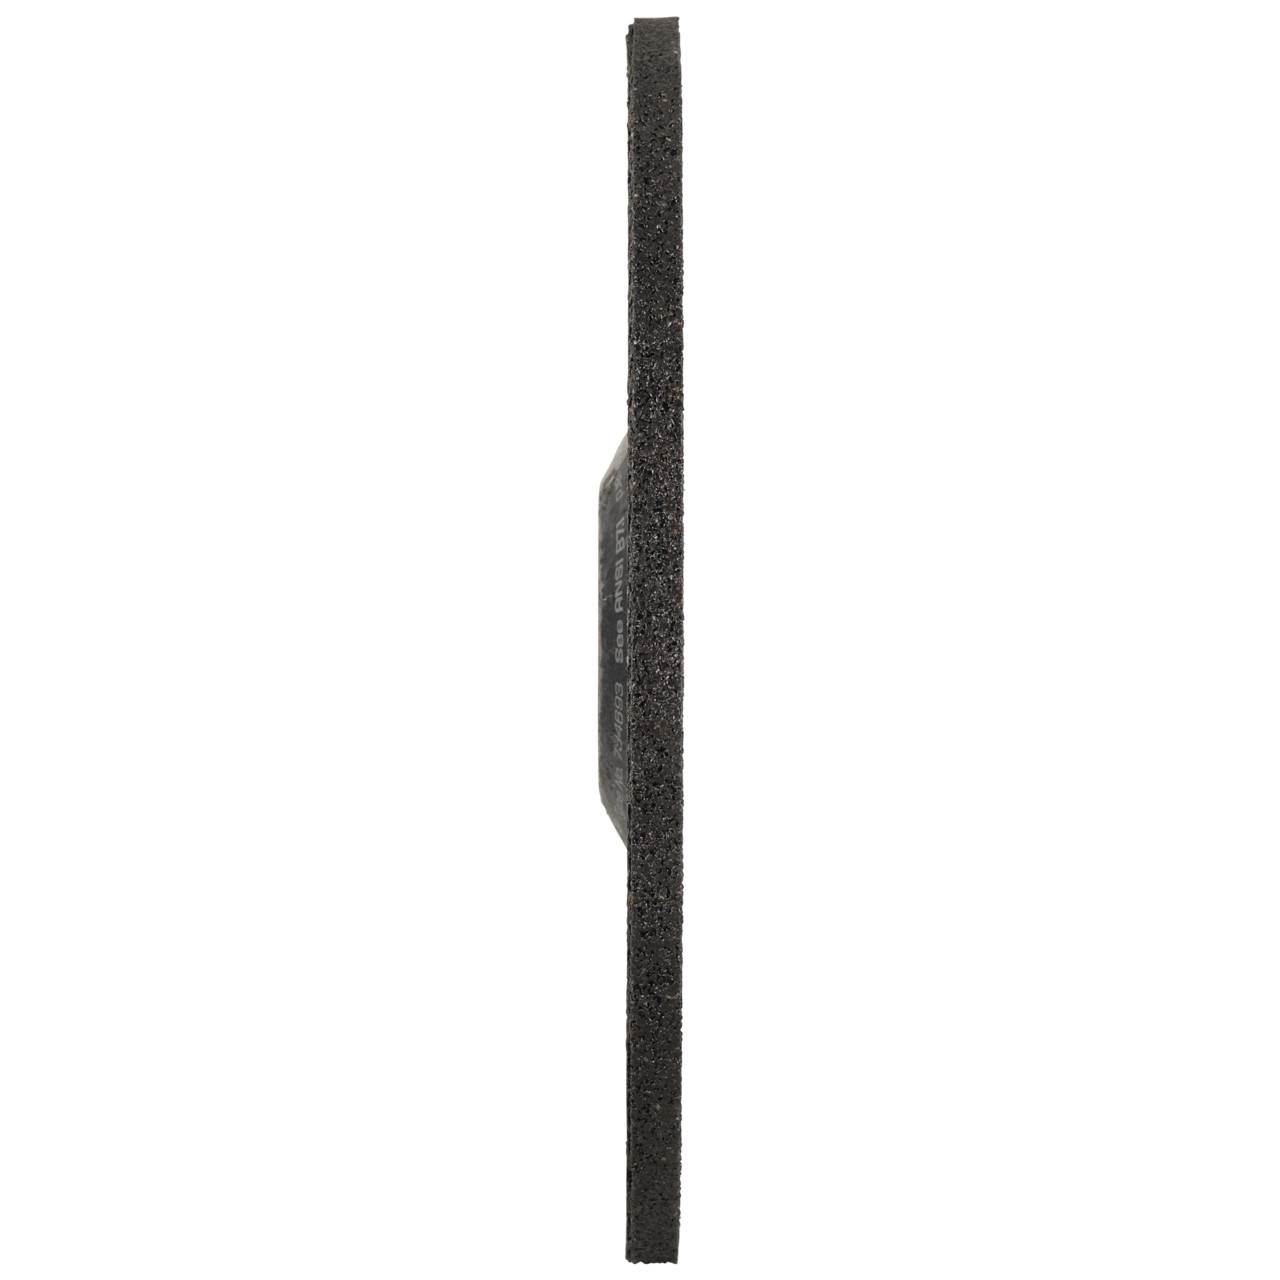 Tyrolit Grove slijpschijf DxUxH 125x6x22,23 FASTCUT Basic voor staal en roestvast staal, vorm: 27C - offset uitvoering, Art. 34468717